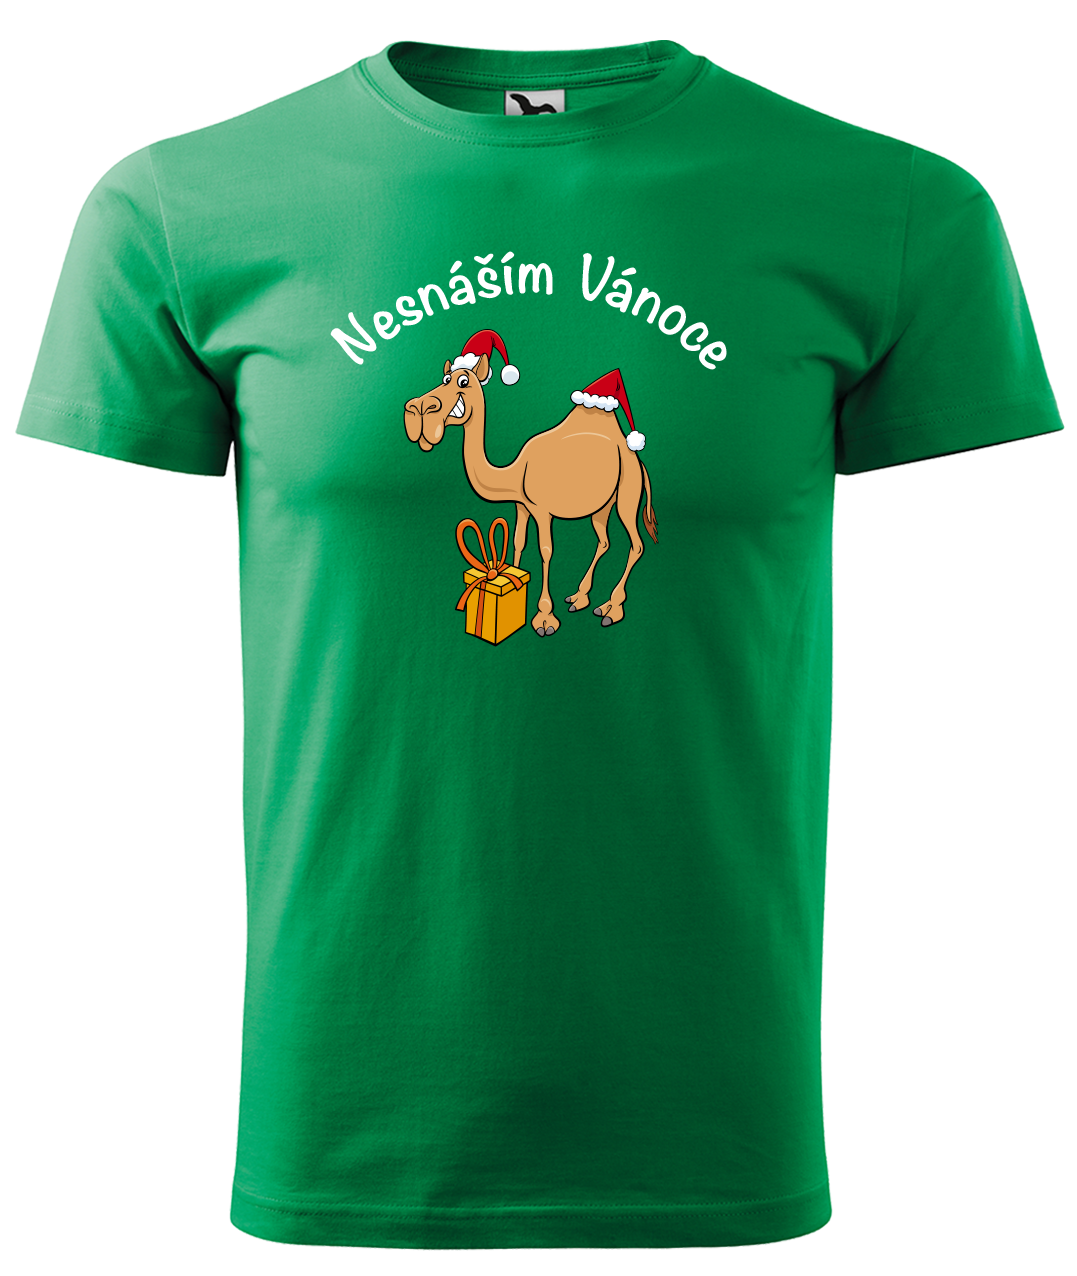 Dětské vánoční tričko - Nesnáším Vánoce Velikost: 4 roky / 110 cm, Barva: Středně zelená (16)